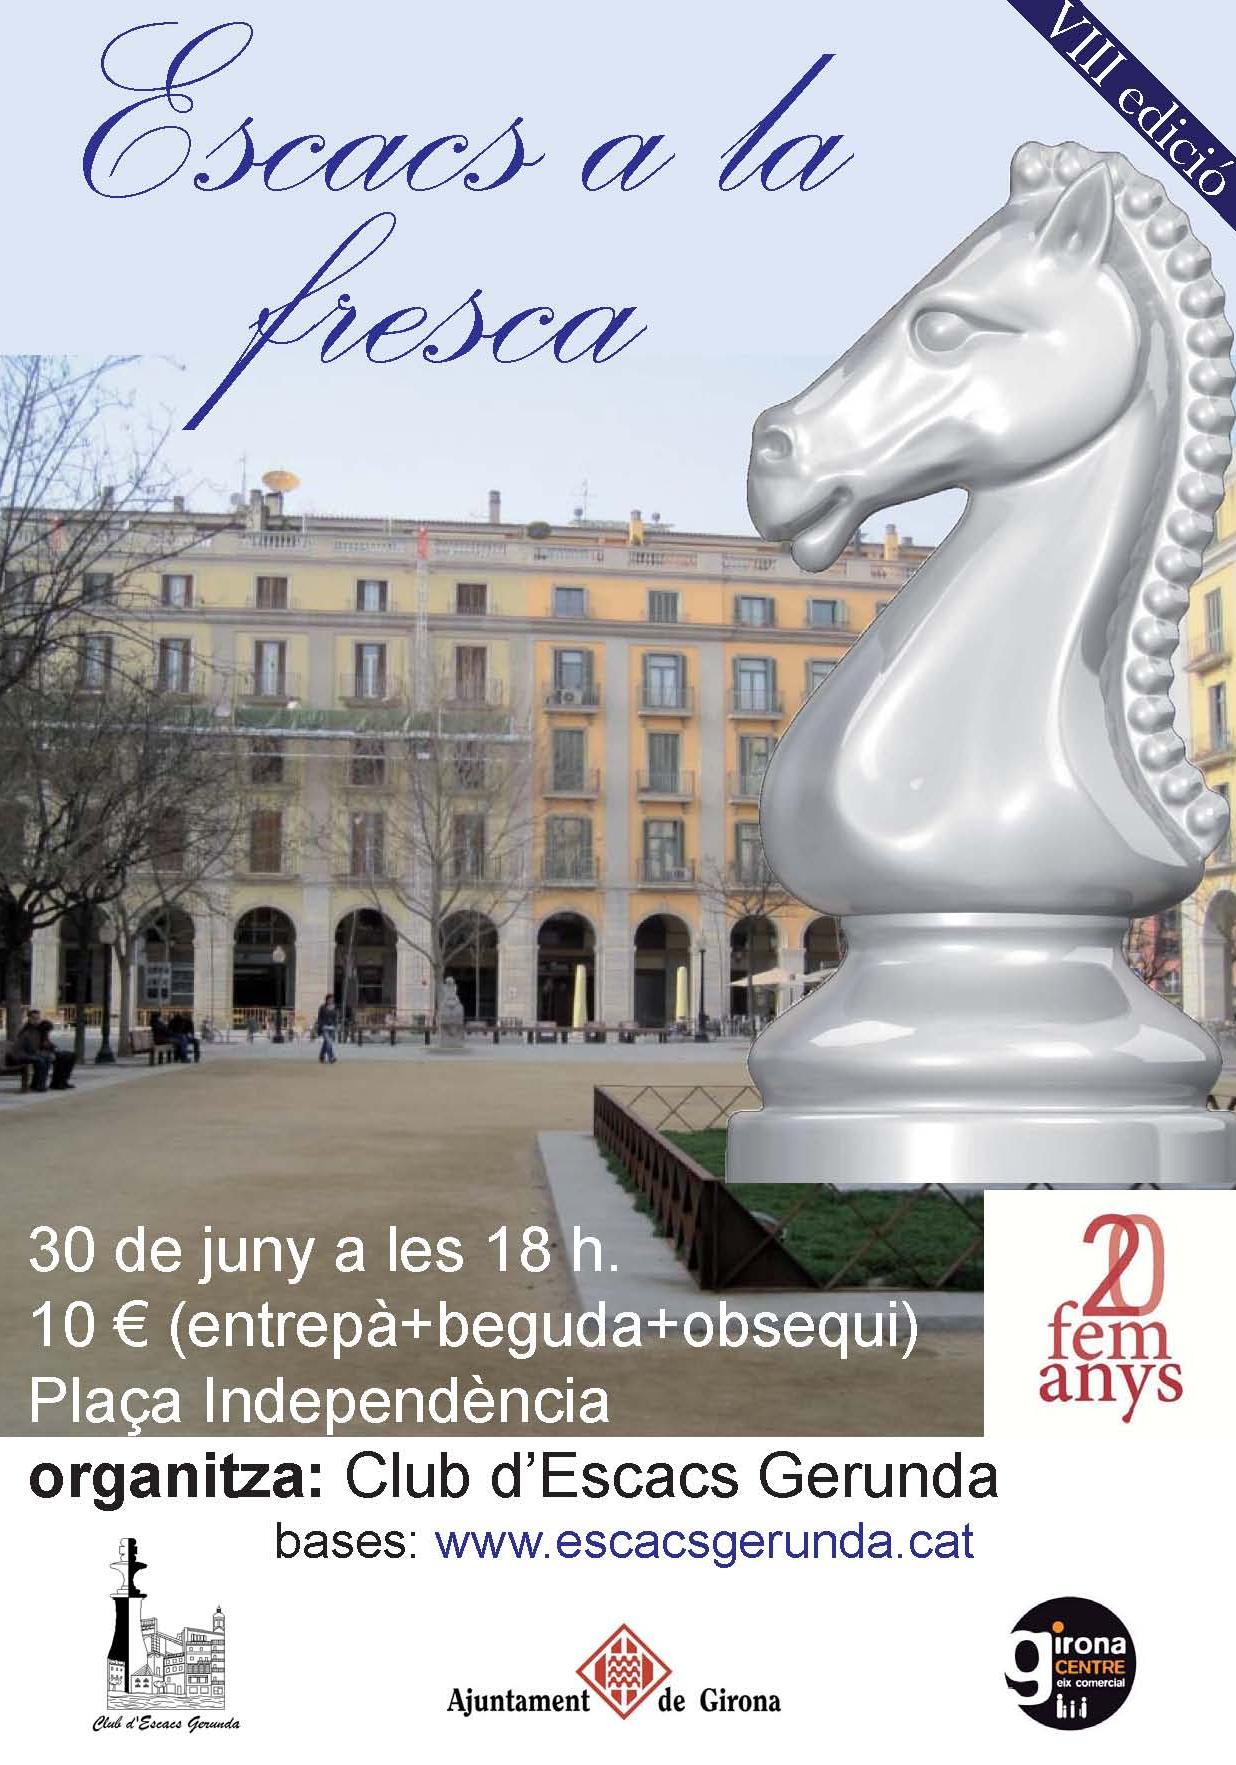 Vuitè torneig d’escacs a la fresca de Girona